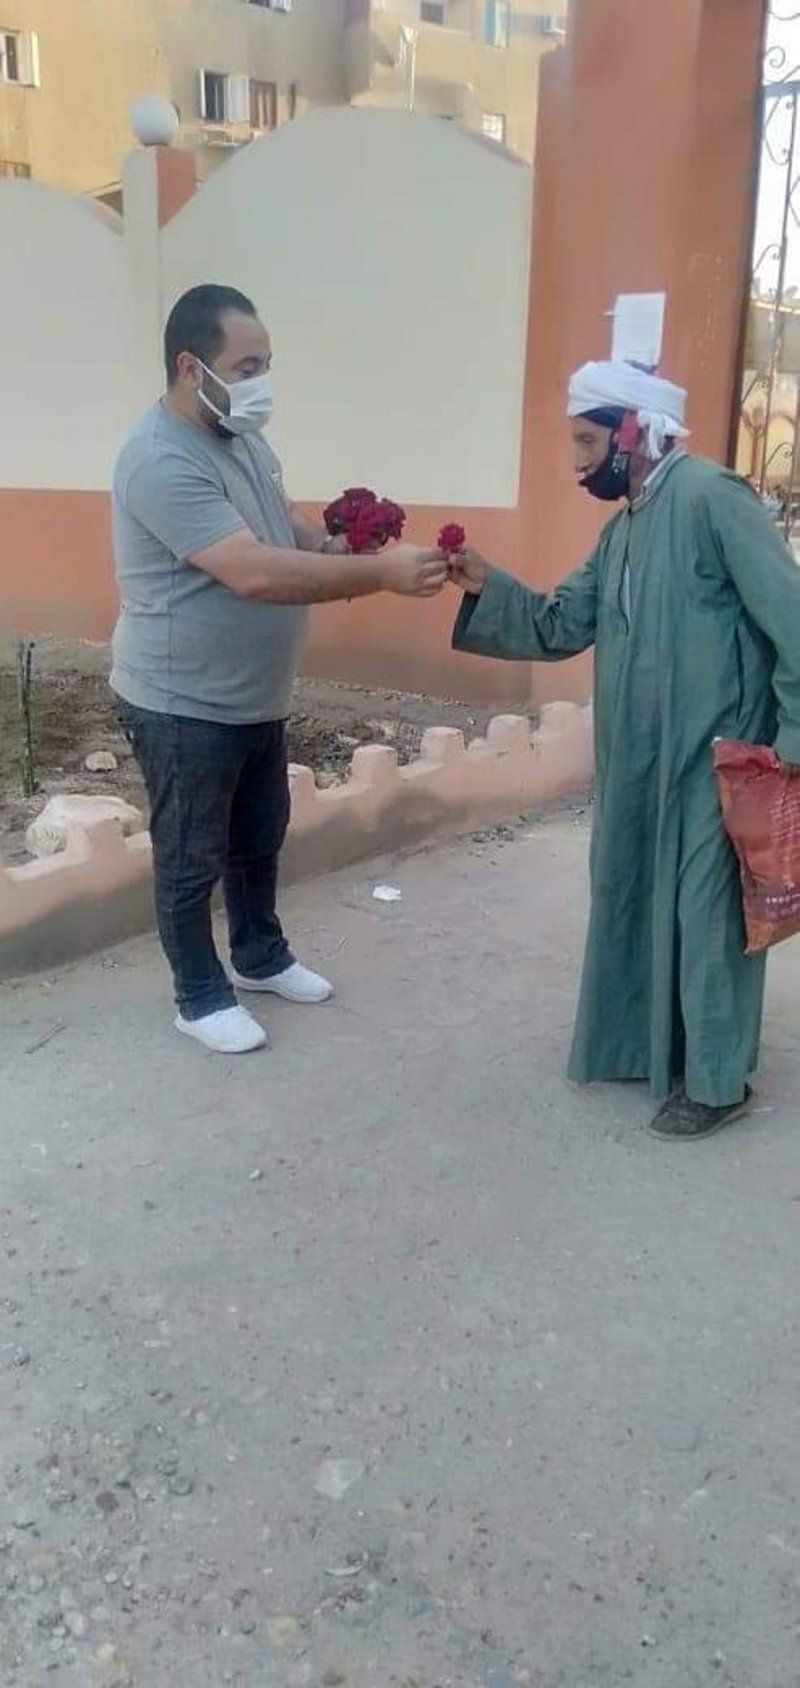 شاهد من مصر.. مسيحي يقف أمام المسجد ليوزع الورود على المصلين